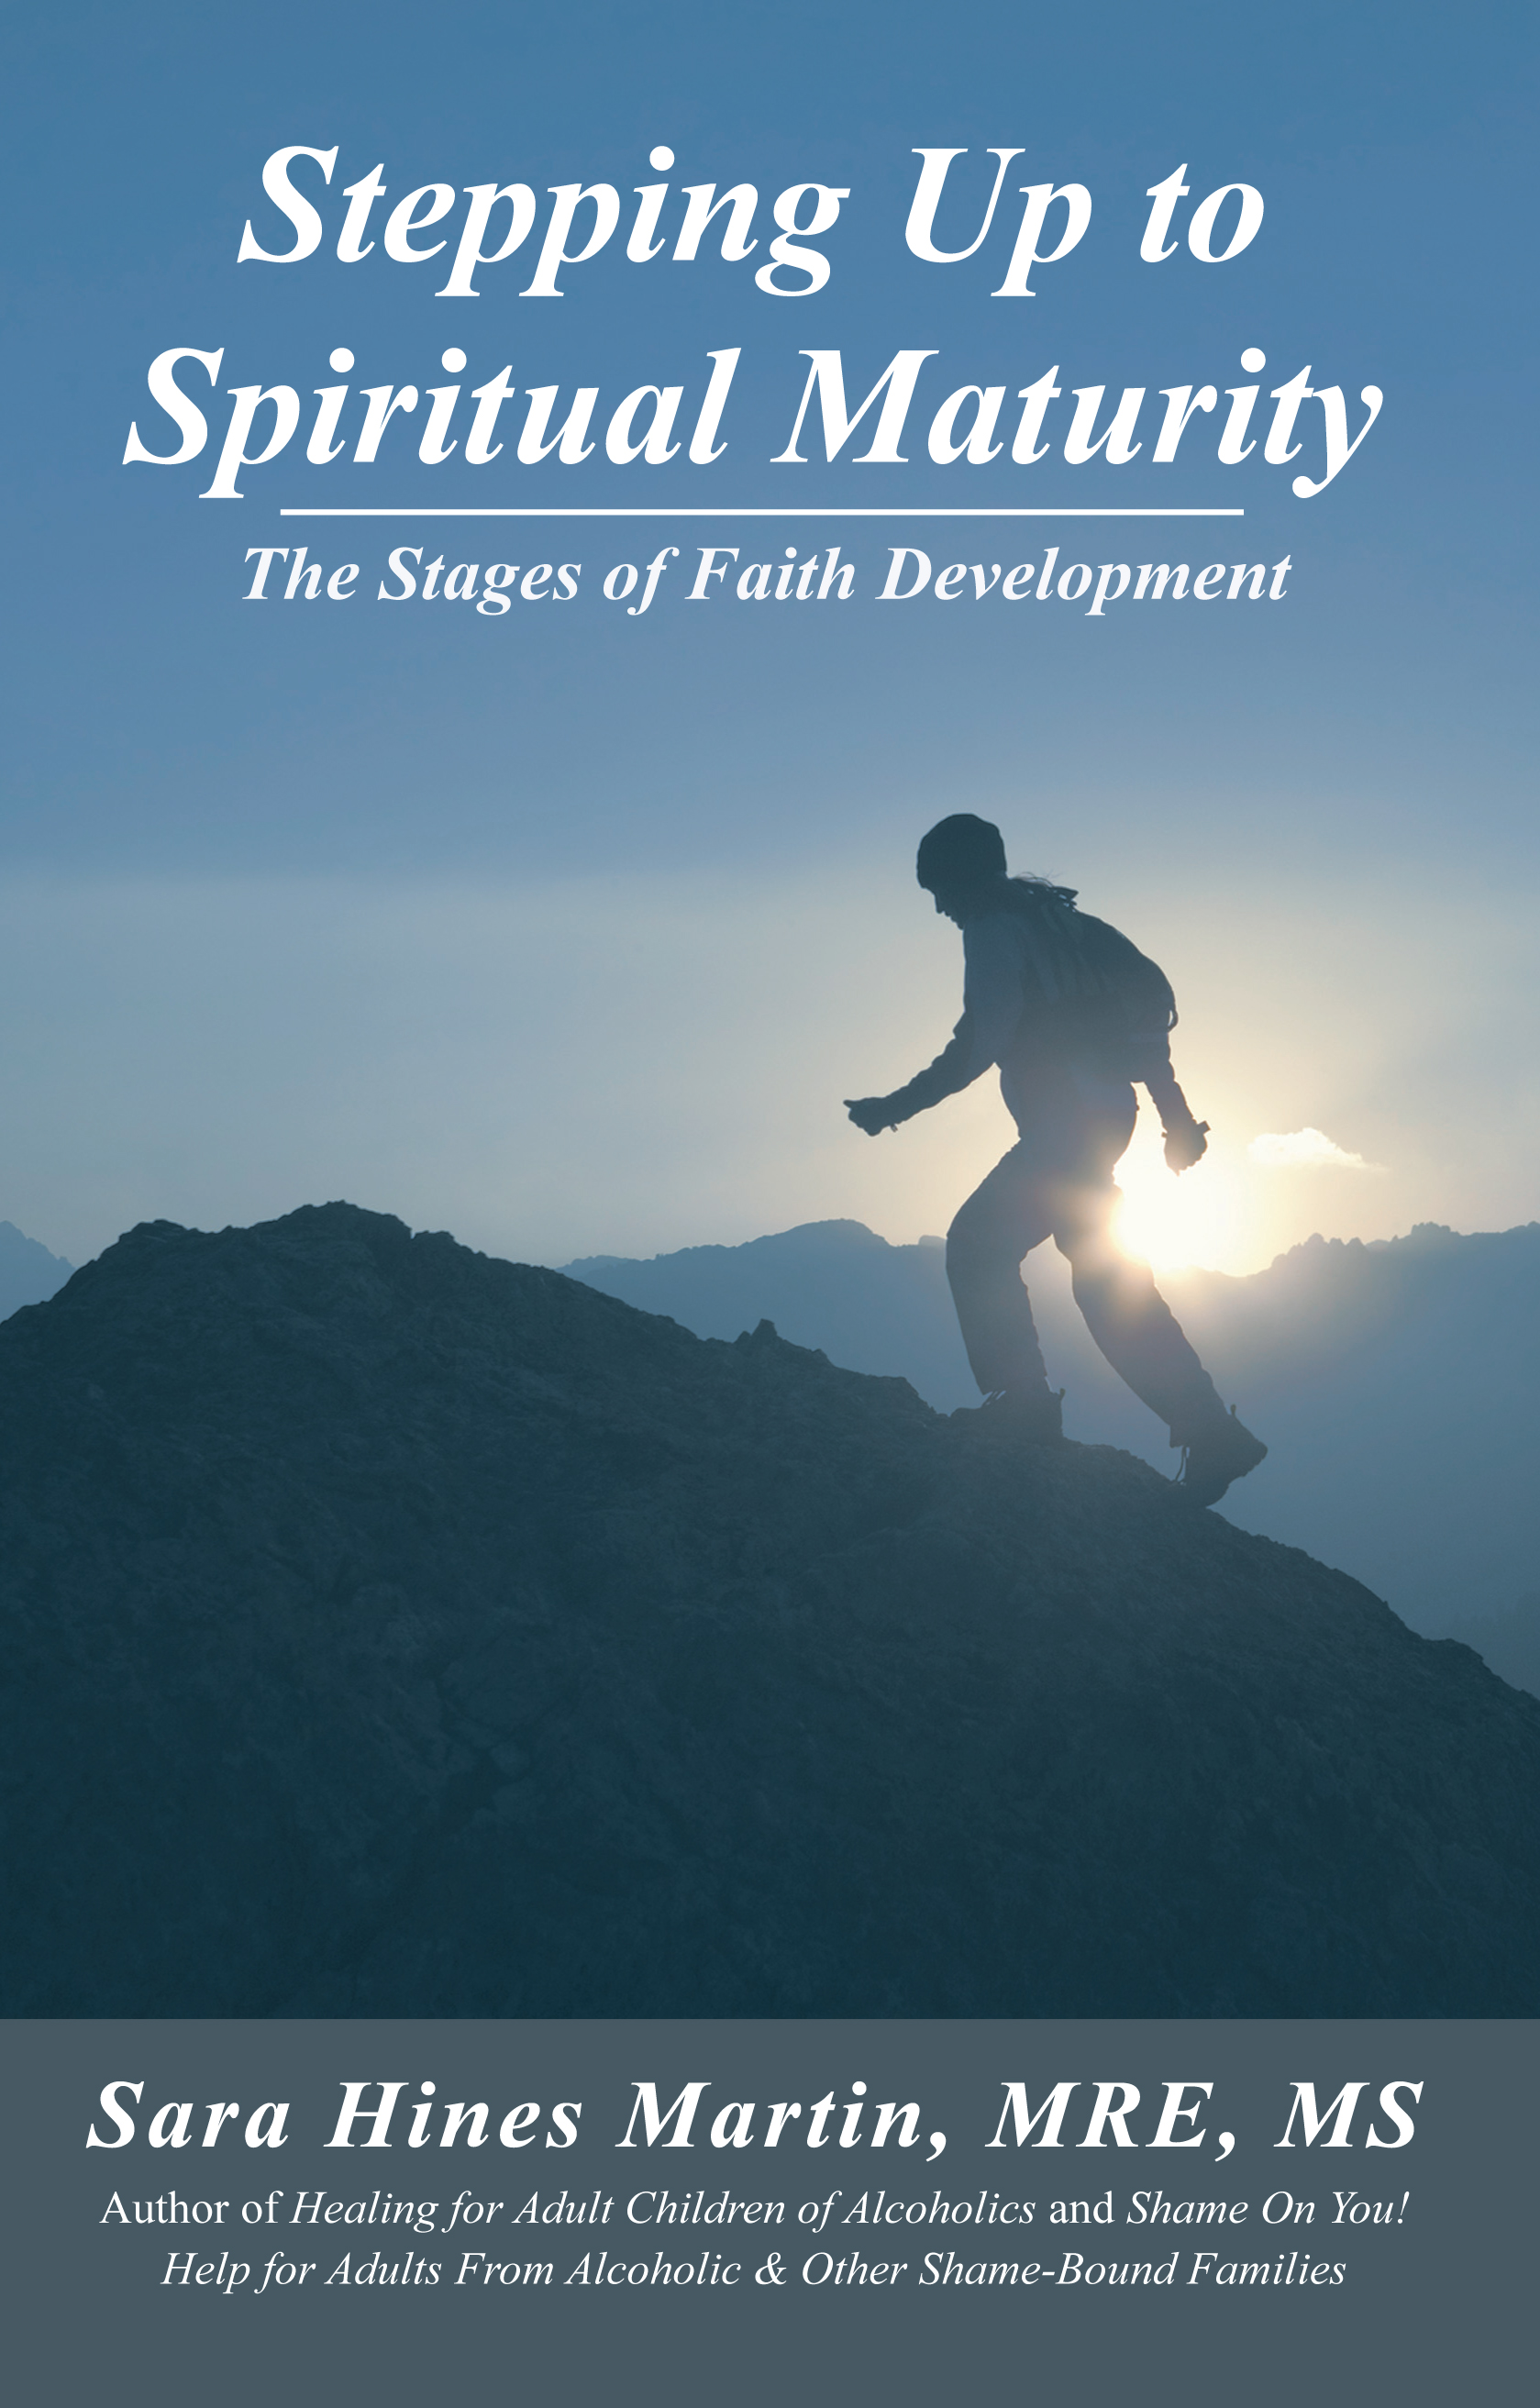 New Book Inspires Spiritual Maturity